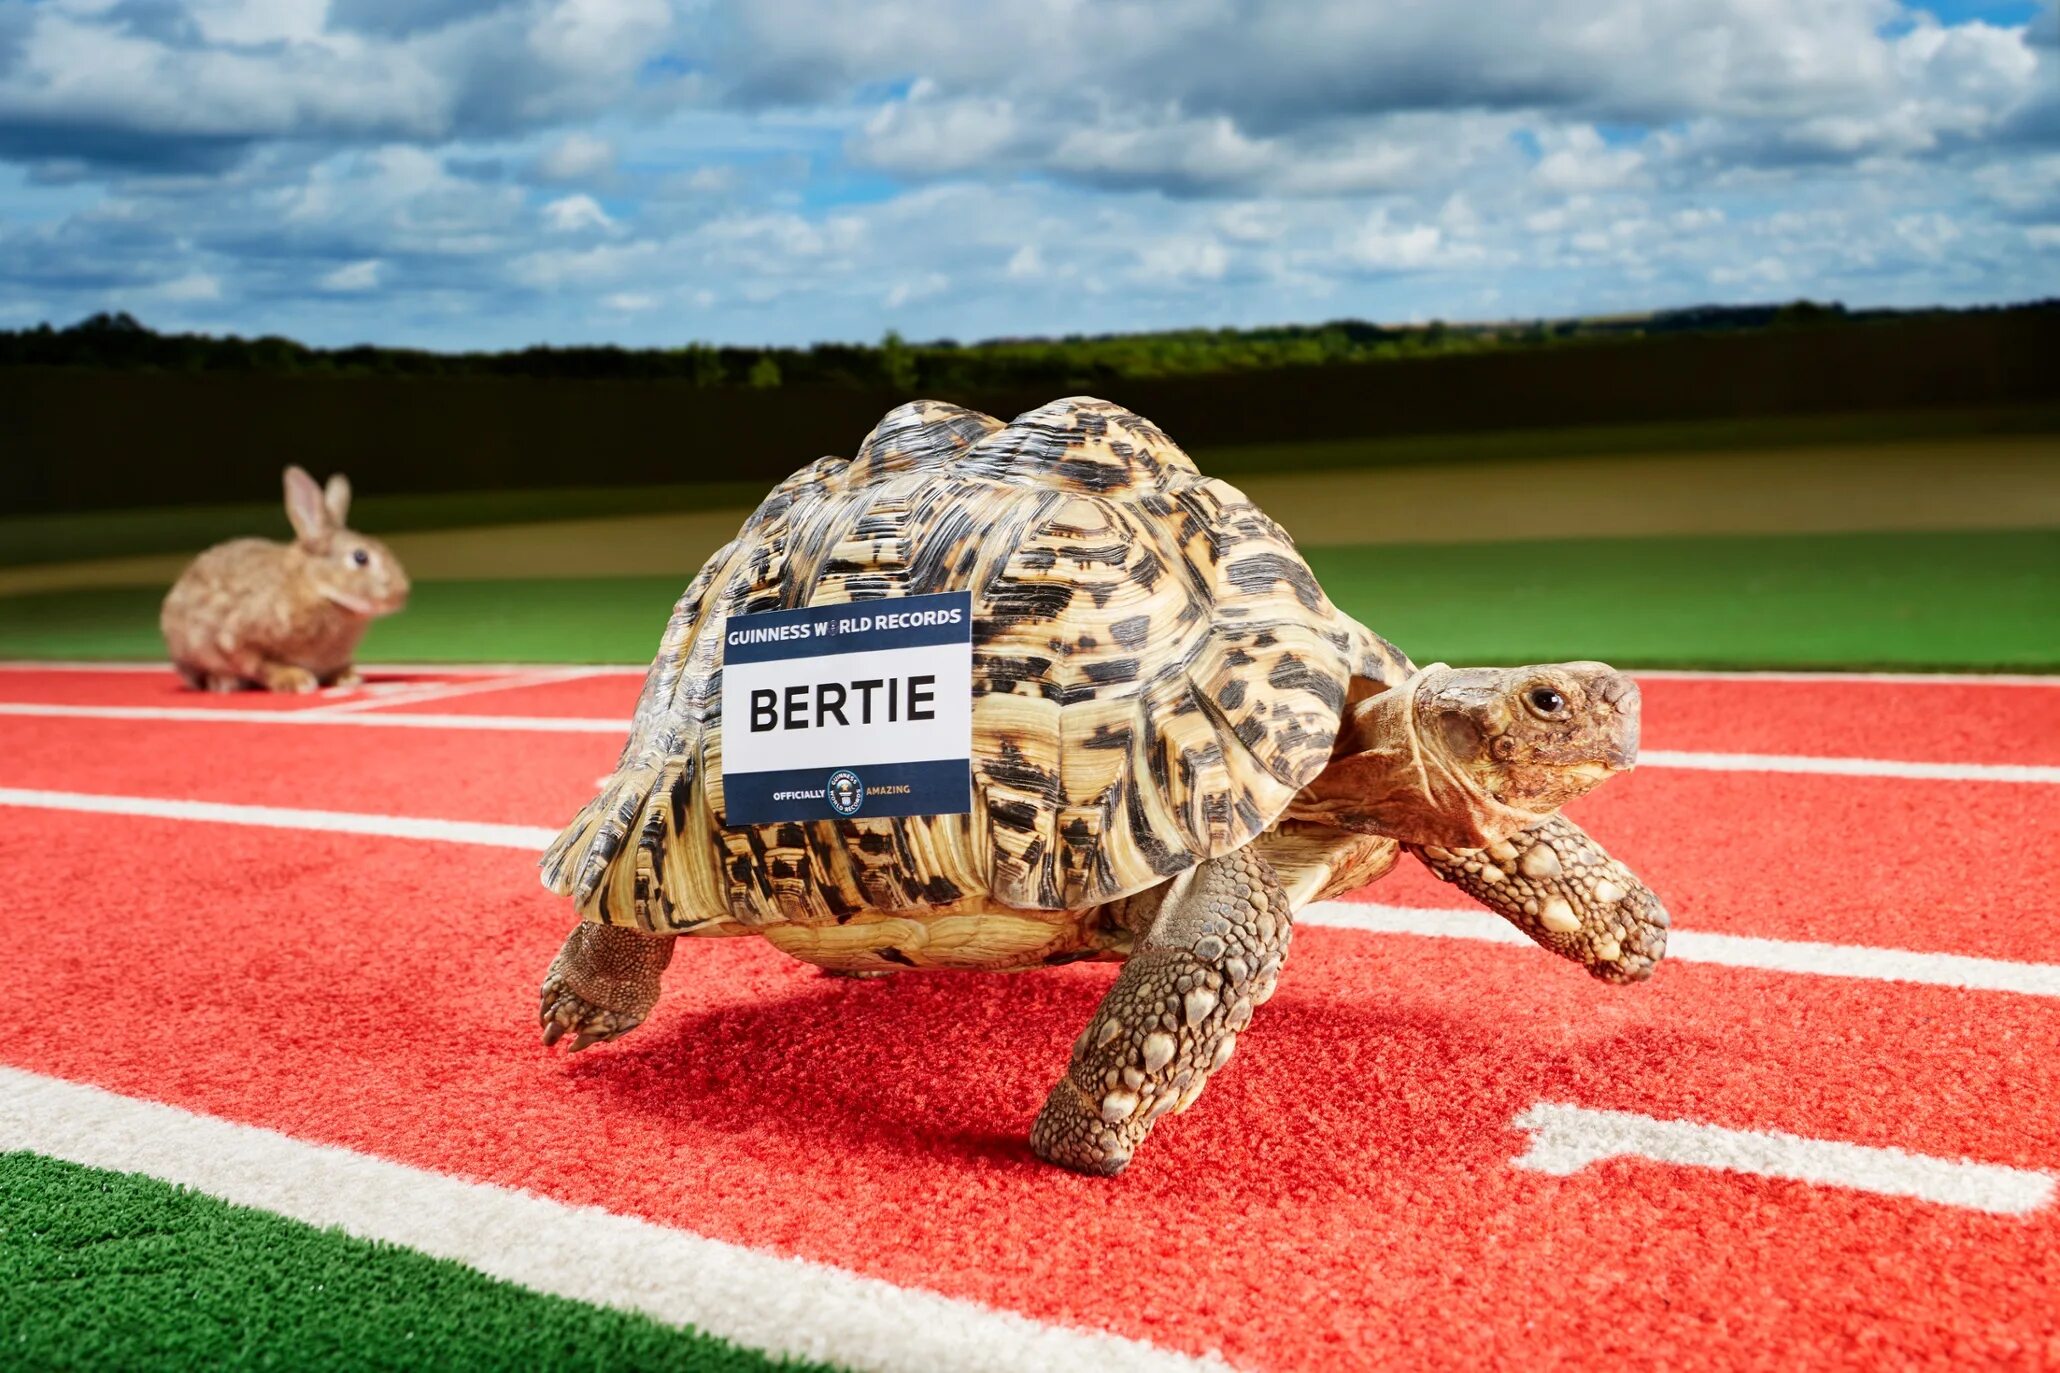 Черепаха Берти. Черепаха Берти самая быстрая в мире. Самая большая черепаха в мире. Гонки черепах. Черепахи быстро бегают